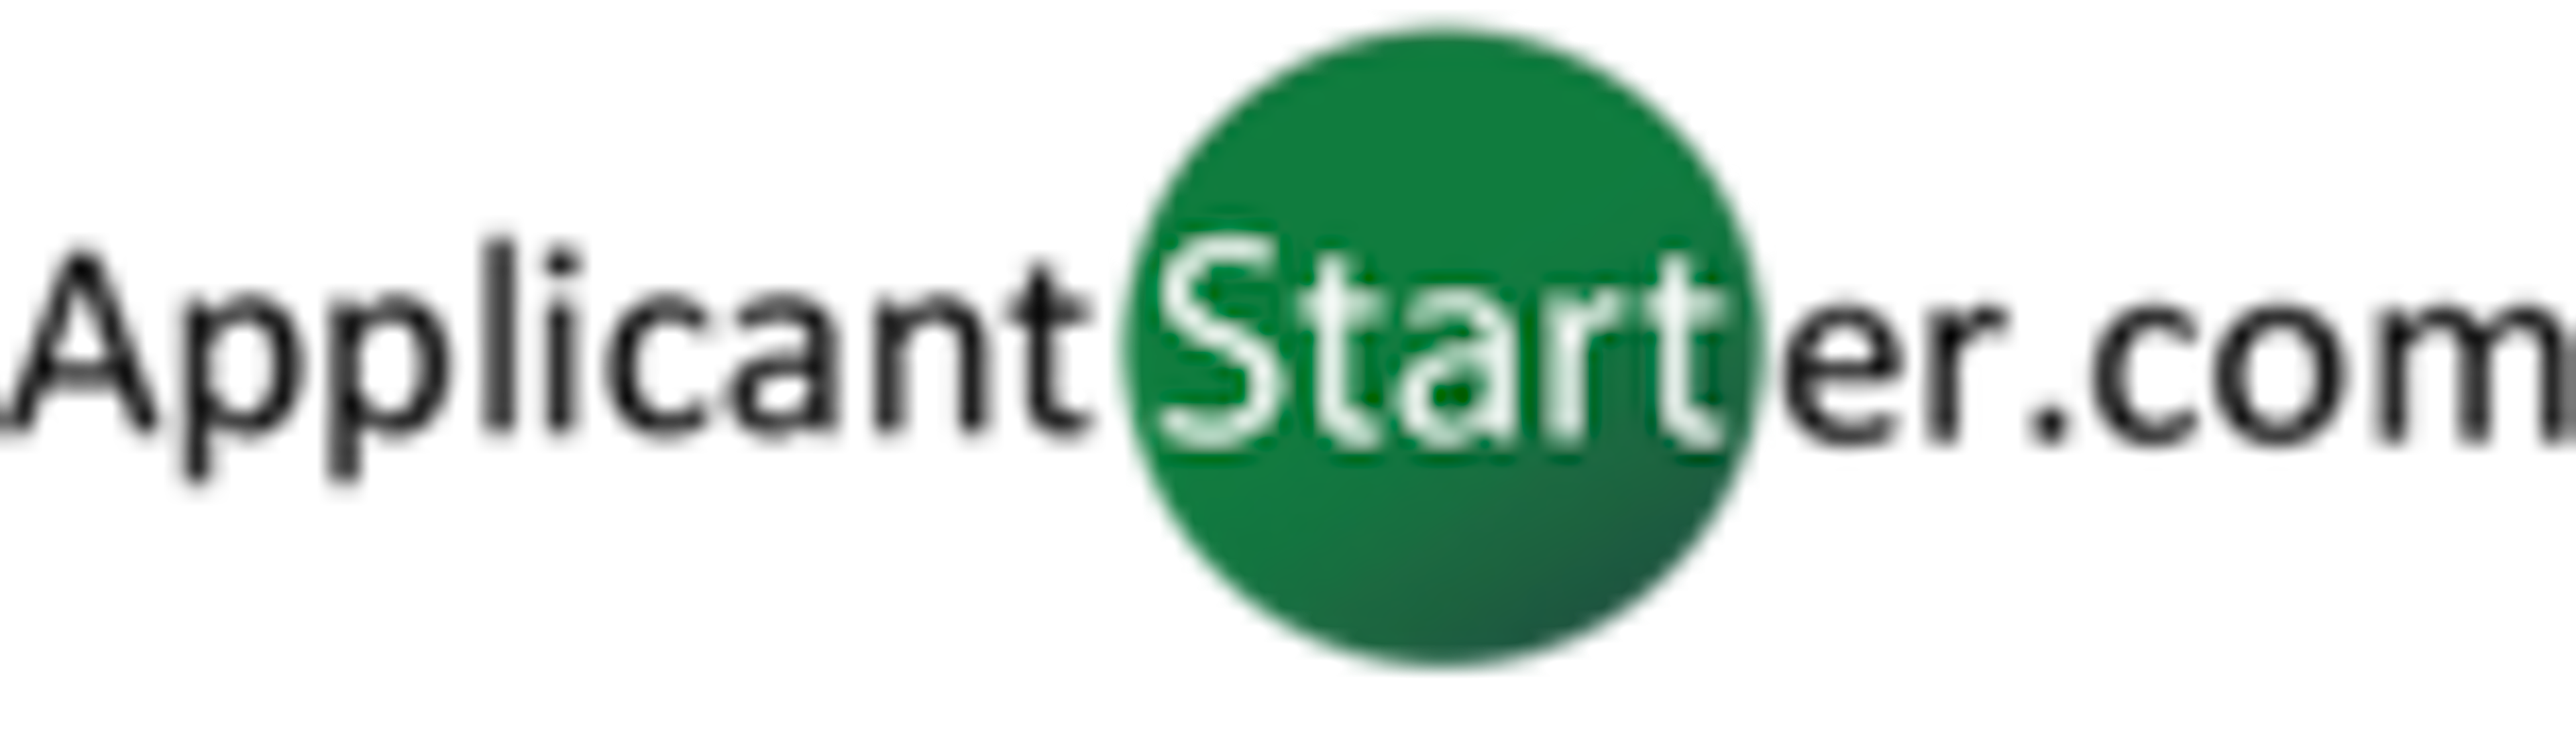 Applicant Starter Logo